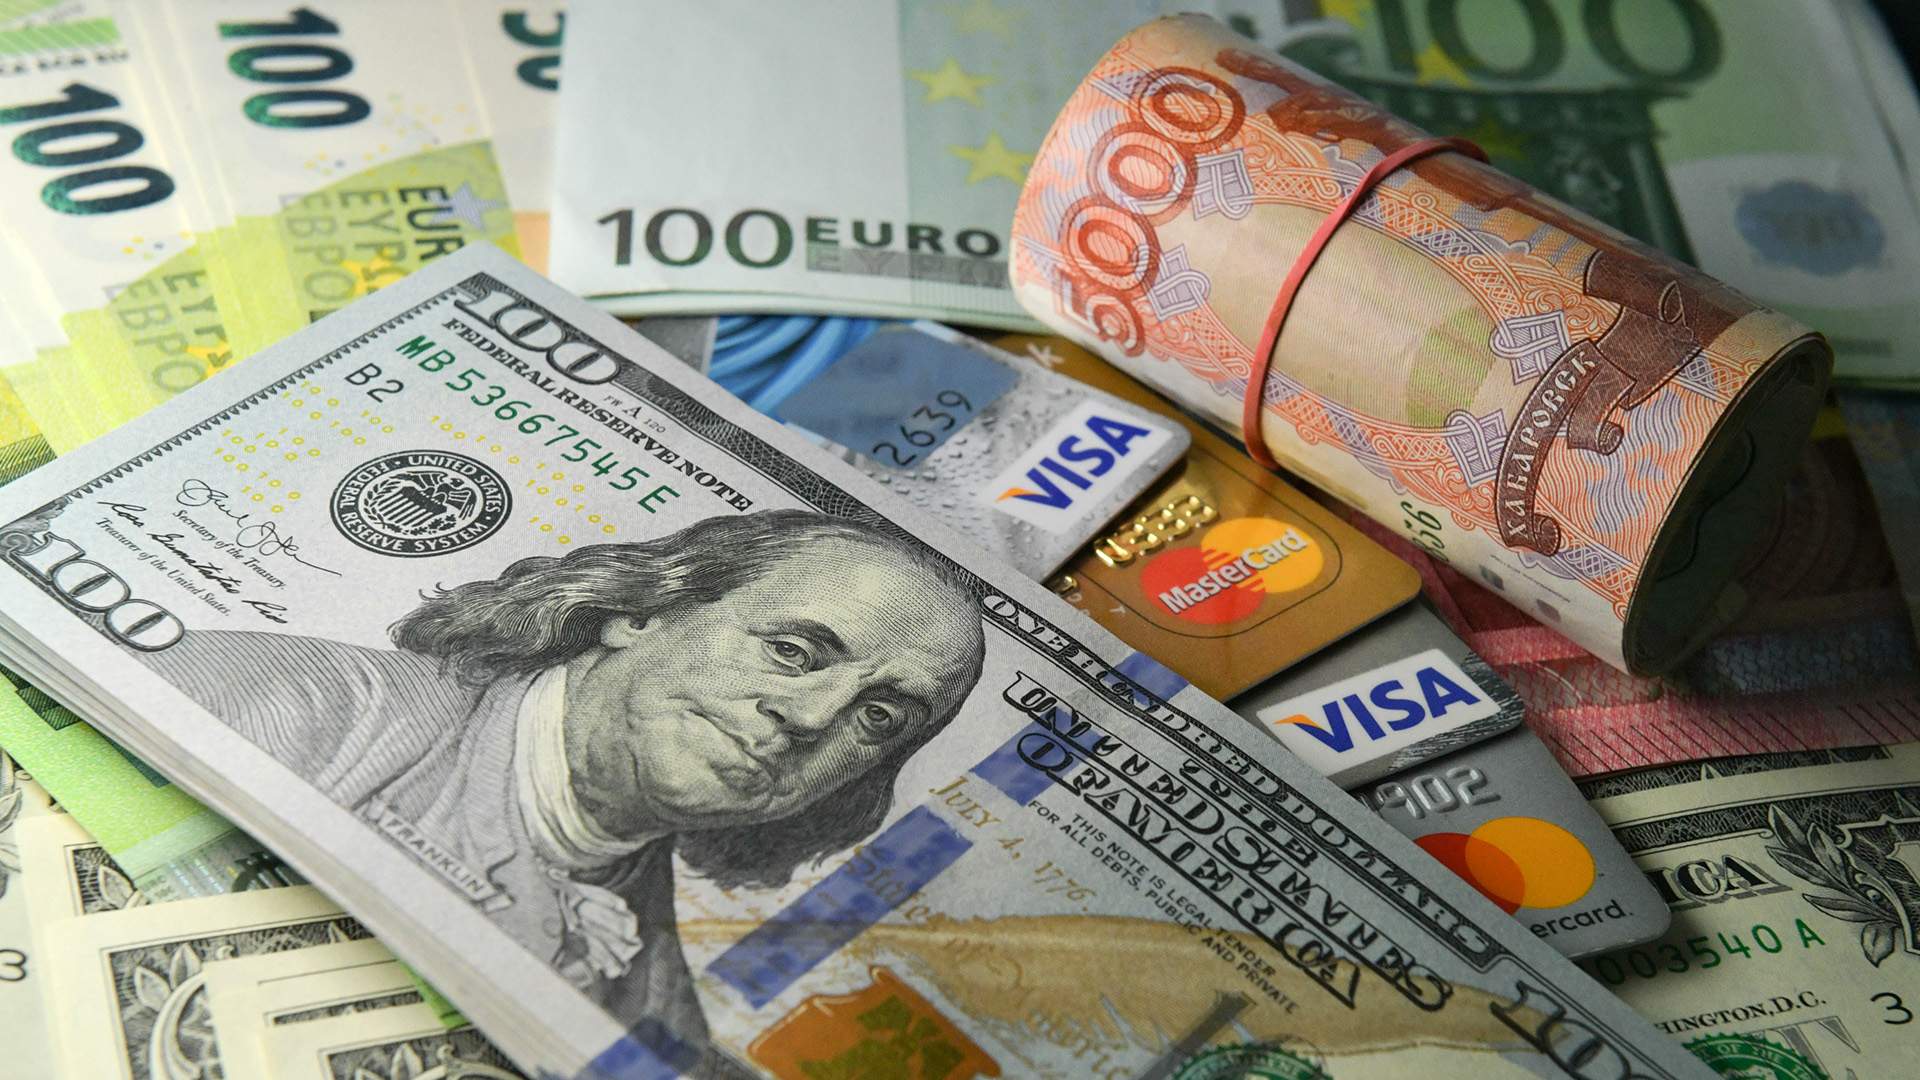 Банки абакан обмен валюты обмен валюты петербург лиговский переулок